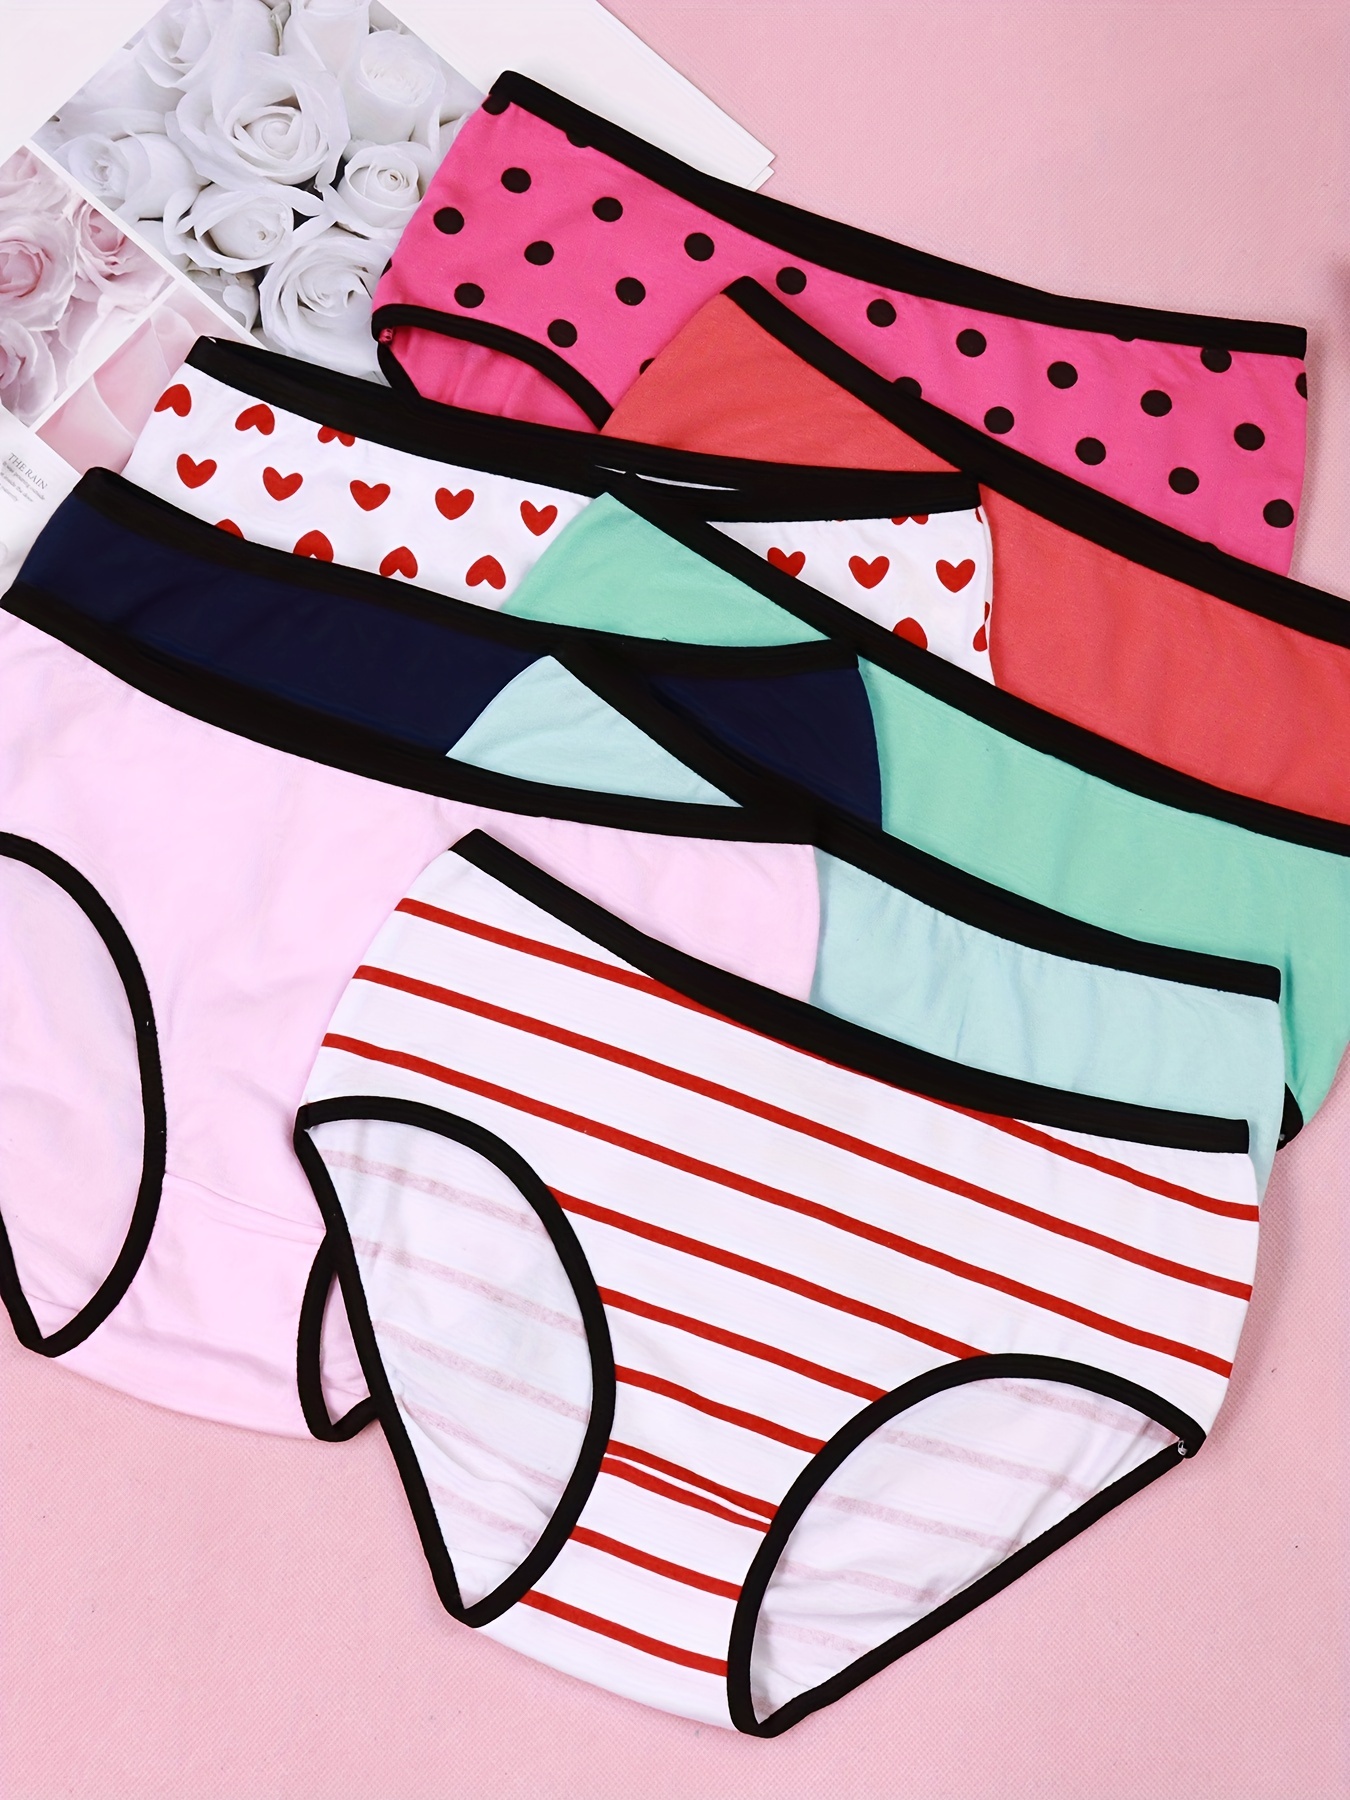 JackLoveBriefs Teenage Girls' Underwear for 12 Pack Big Knickers